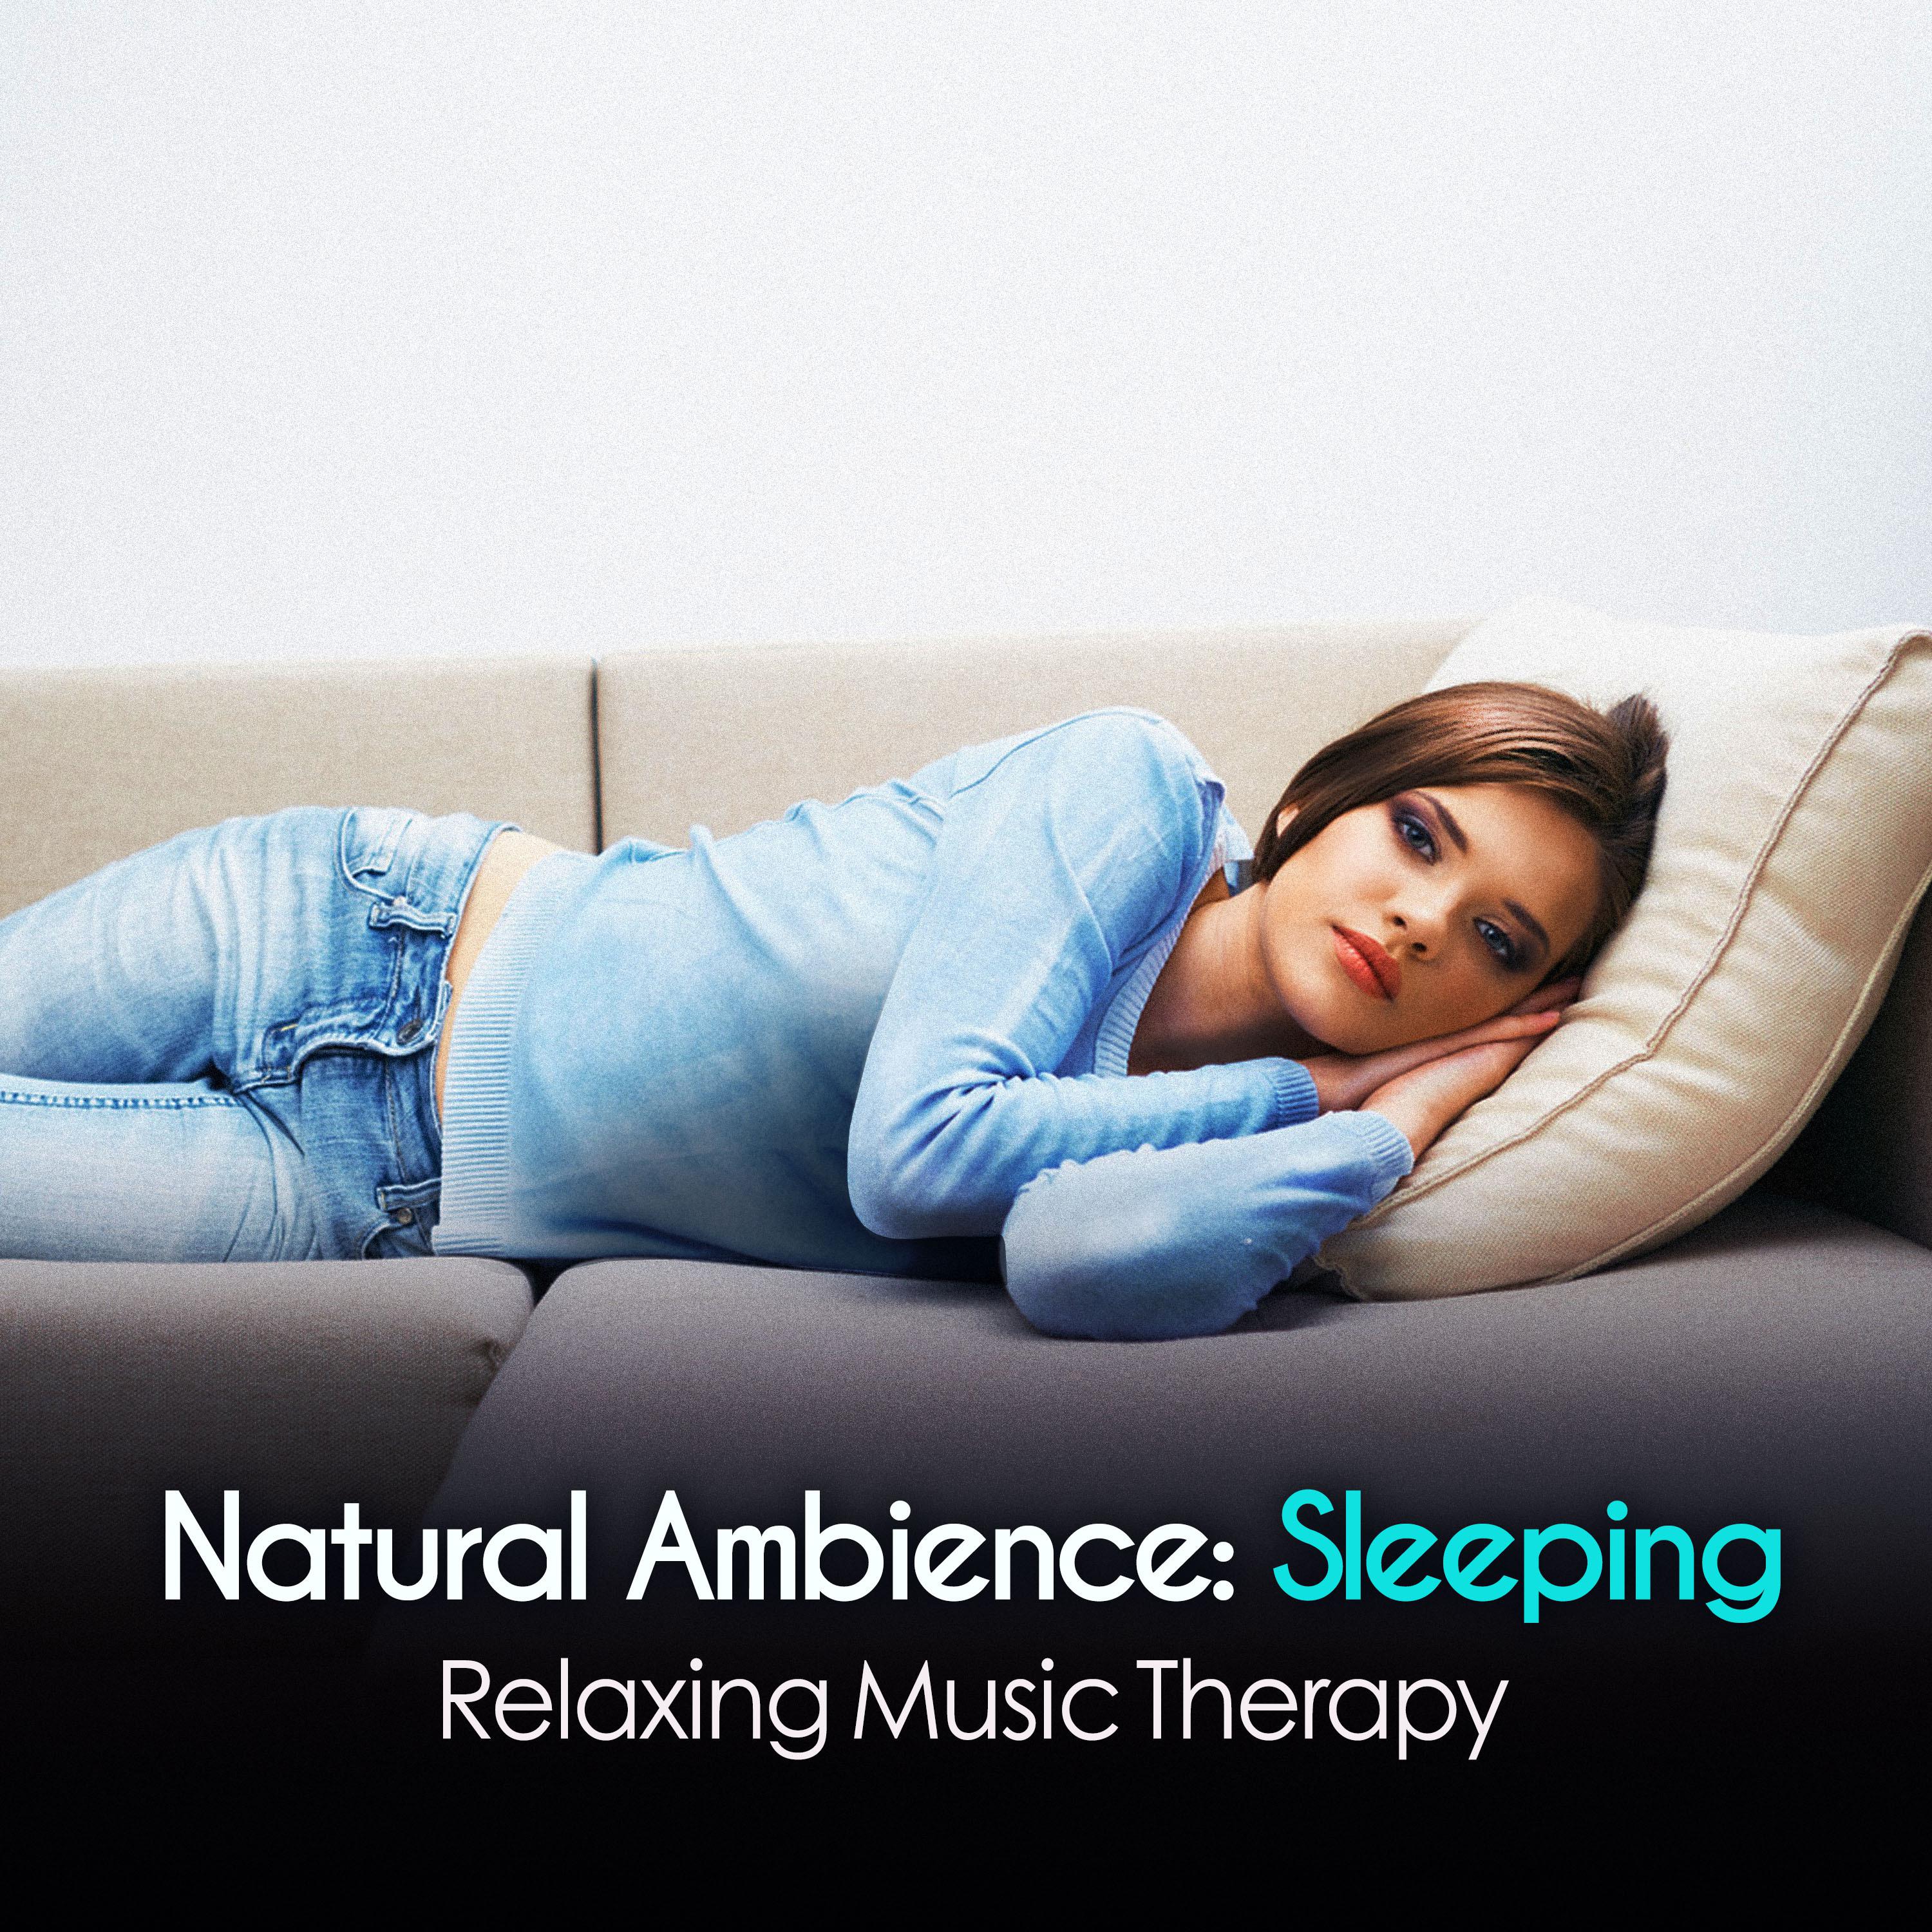 Natural Ambience: Sleeping